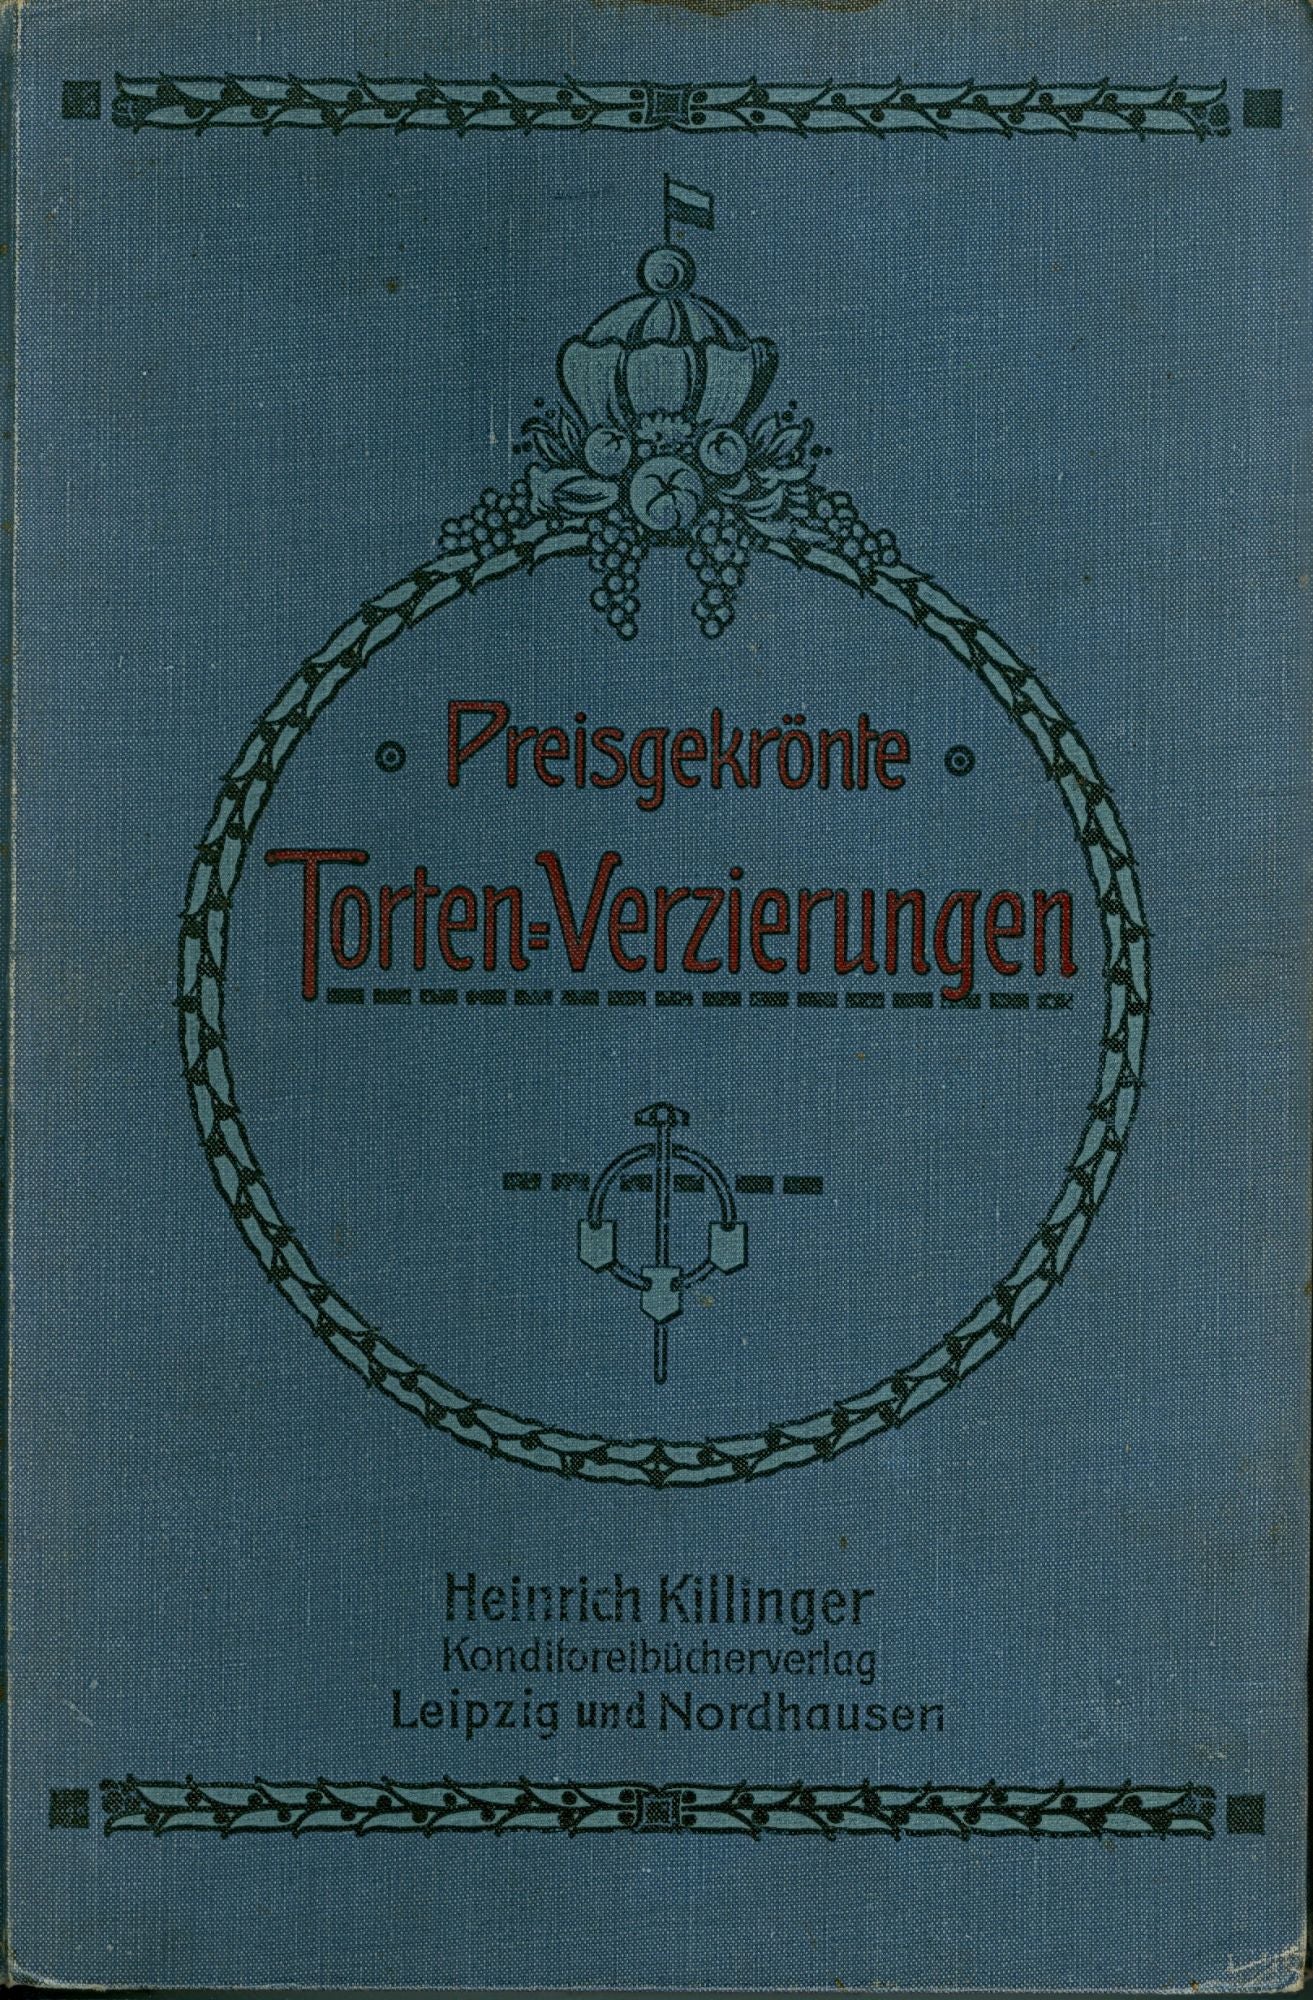 Item #2080 Preisgekronte. Torten-Verzierungen. 54 modern Vorlagen mit Erlaueterungen und einer Garnierschule. Heinrich Killinger.